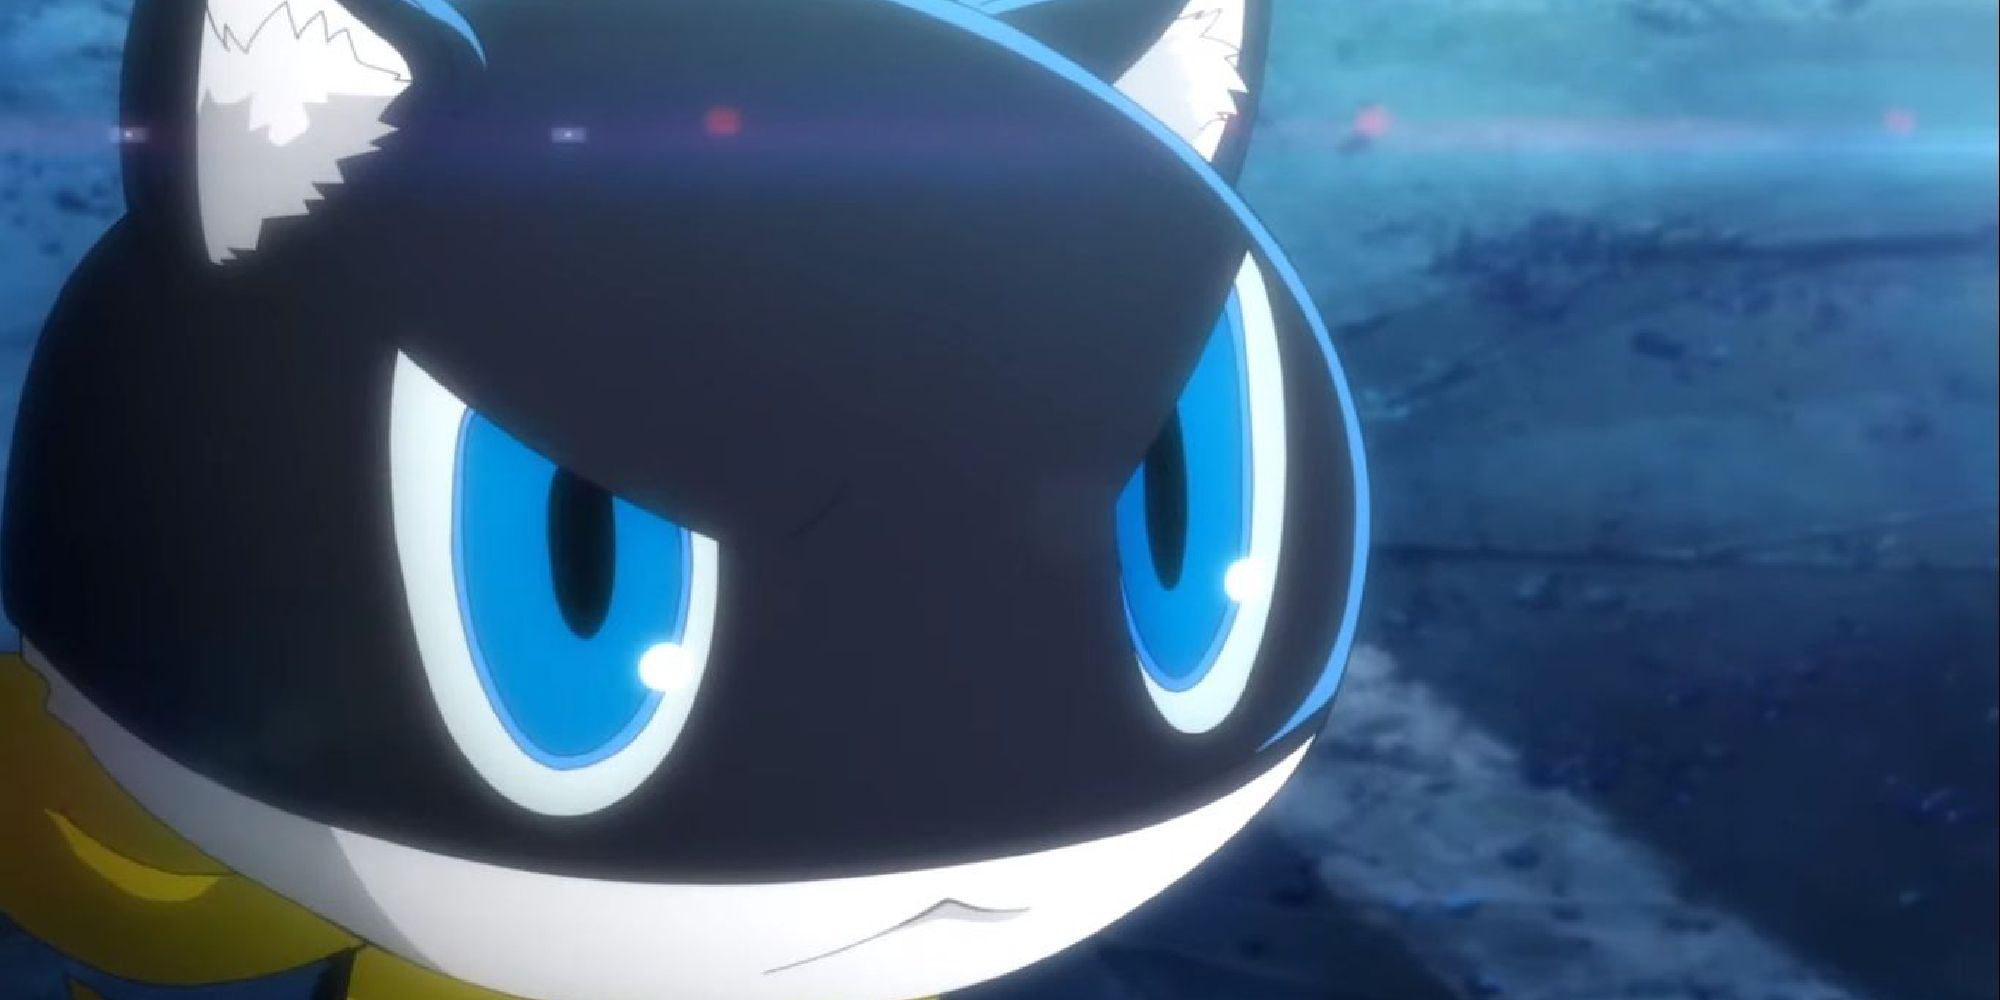 Personnage de chat Morgana de Persona 5, un regard diabolique sur son visage.